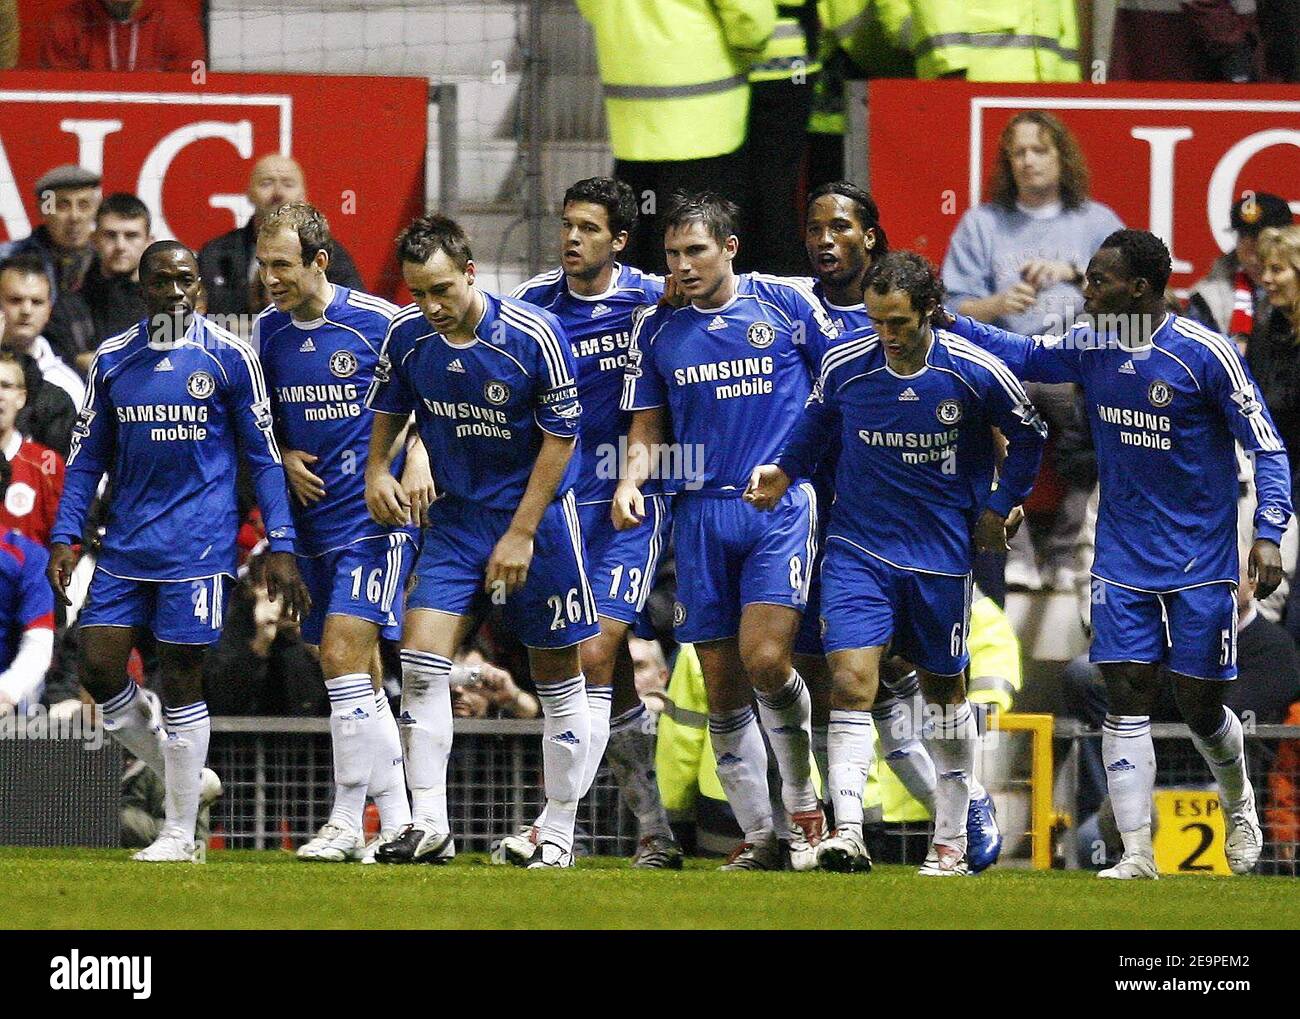 L'équipe de Chelsea célèbre lors de la première équipe de FA Barclays, Manchester United contre Chelsea au stade Old Trafford de Manchester, Royaume-Uni, le 26 novembre 2006. La correspondance s'est terminée par un tirage de 1-1. Photo de Christian Liewig/ABACAPRESS.COM Banque D'Images